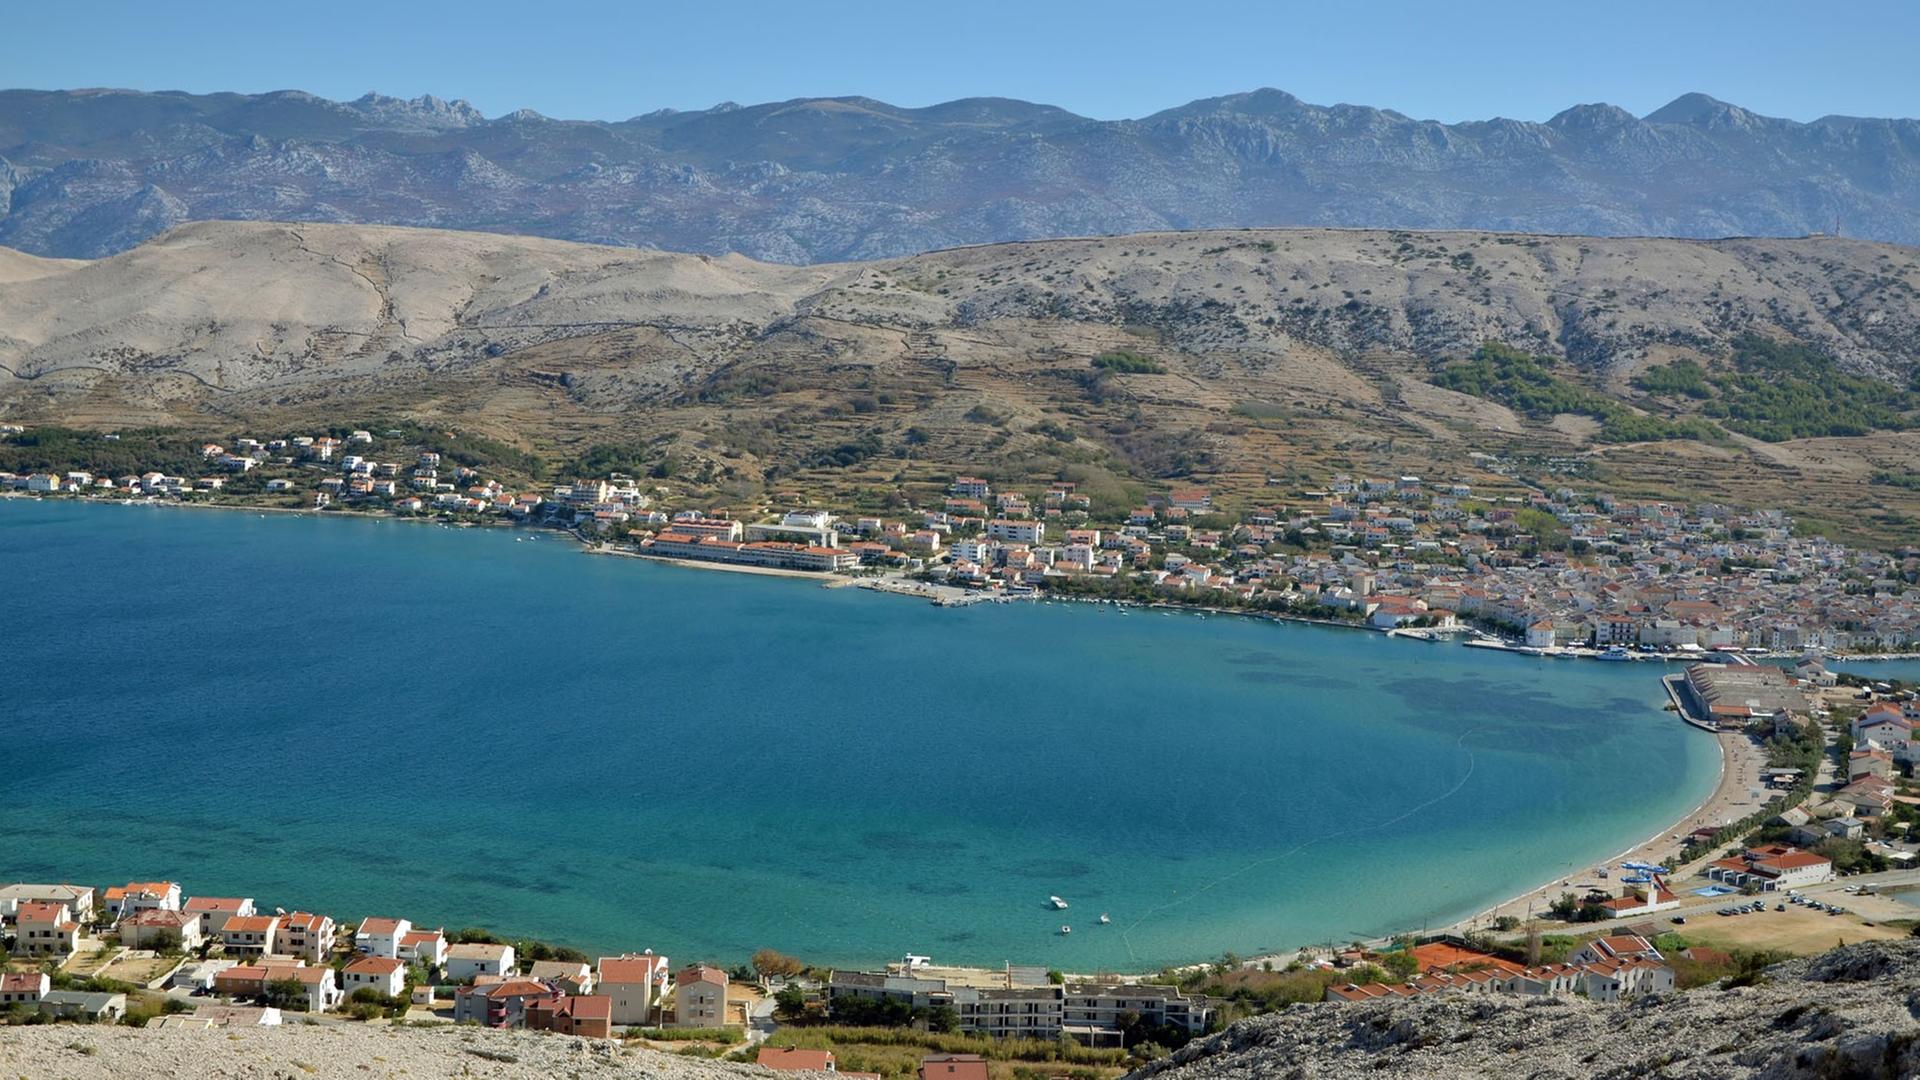 Blick auf die Stadt Pag auf der kroatischen Insel Pag, aufgenommen am 08.09.2012.